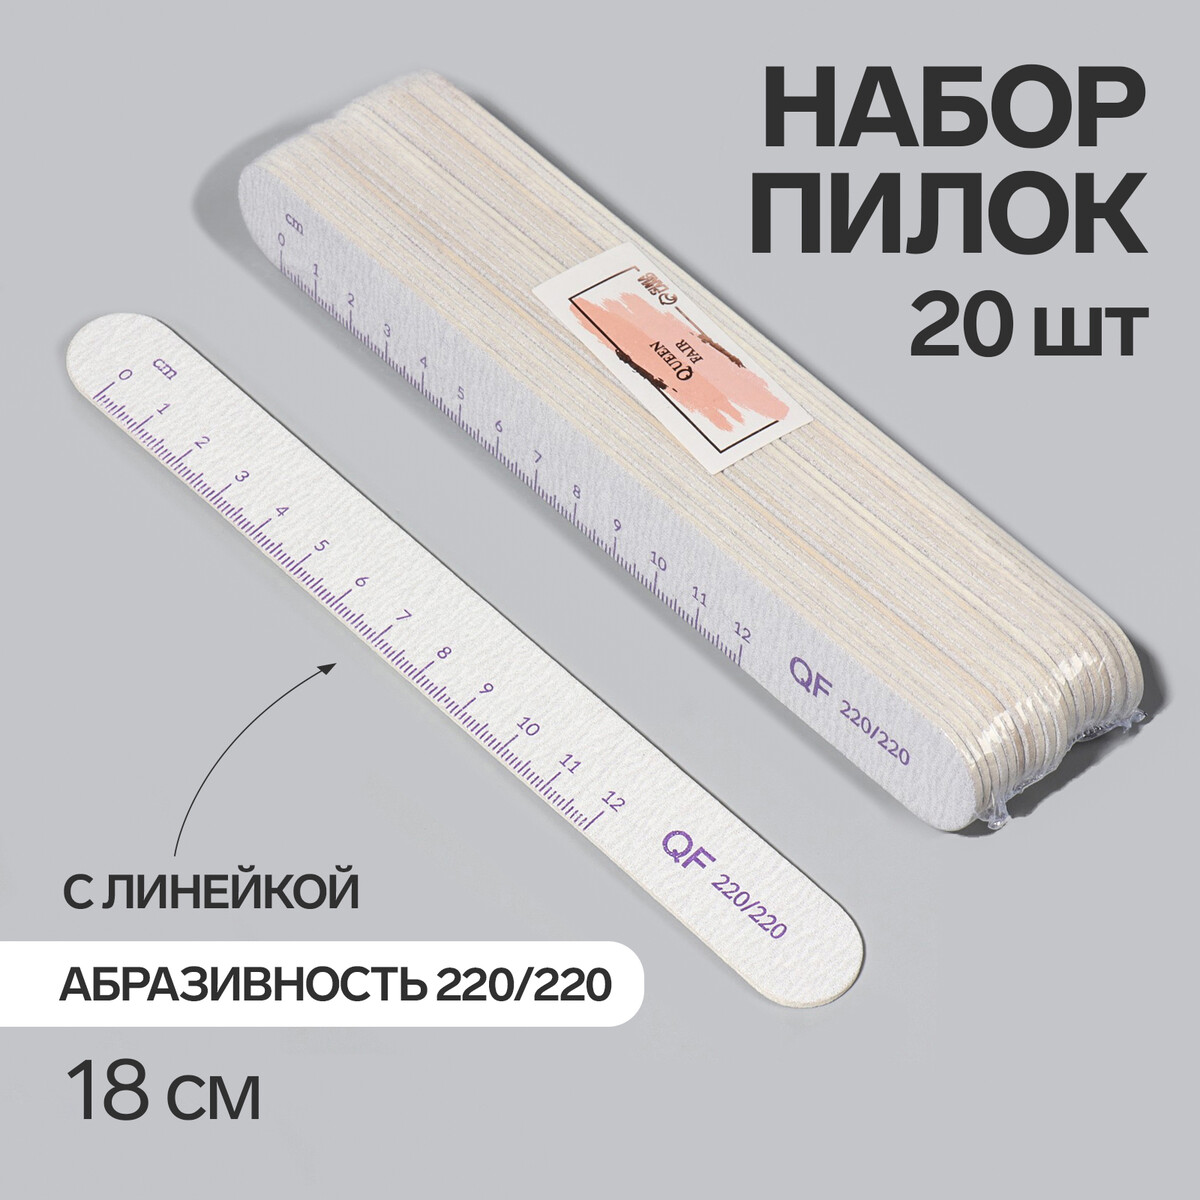 Пилка-наждак, набор 20 шт, абразивность 220, 18 см, цвет серый/фиолетовый набор коробок 3 в 1 обратный конус фиолетовый без крышек с ручкой 11 х 14 х 14 16 х 16 х 18 см